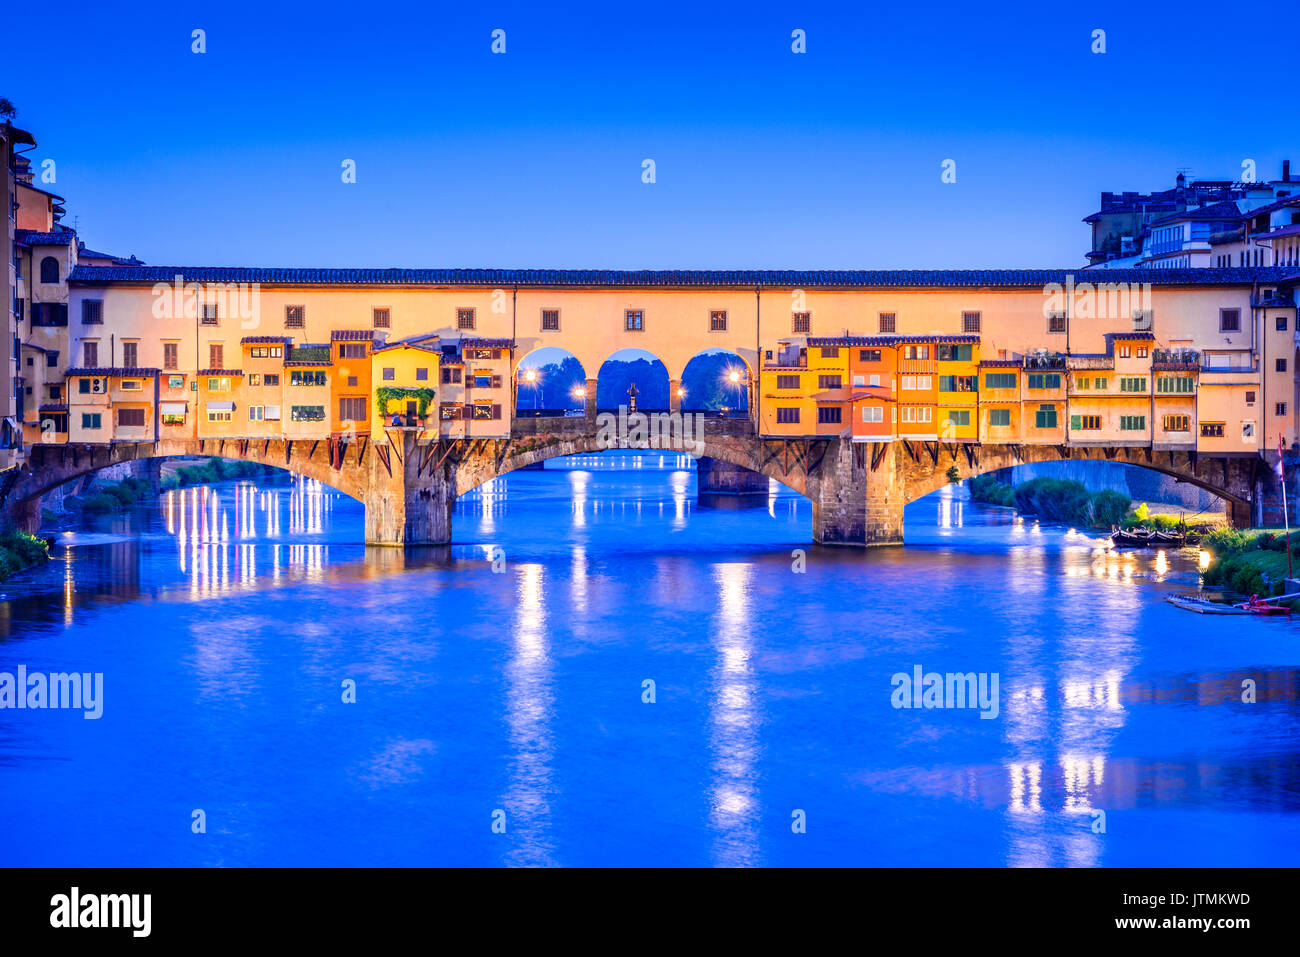 Florenz, Toskana - Ponte Vecchio, mittelalterliche Steinbogen Brücke über den Fluss Arno, Architektur der Renaissance in Italien. Stockfoto